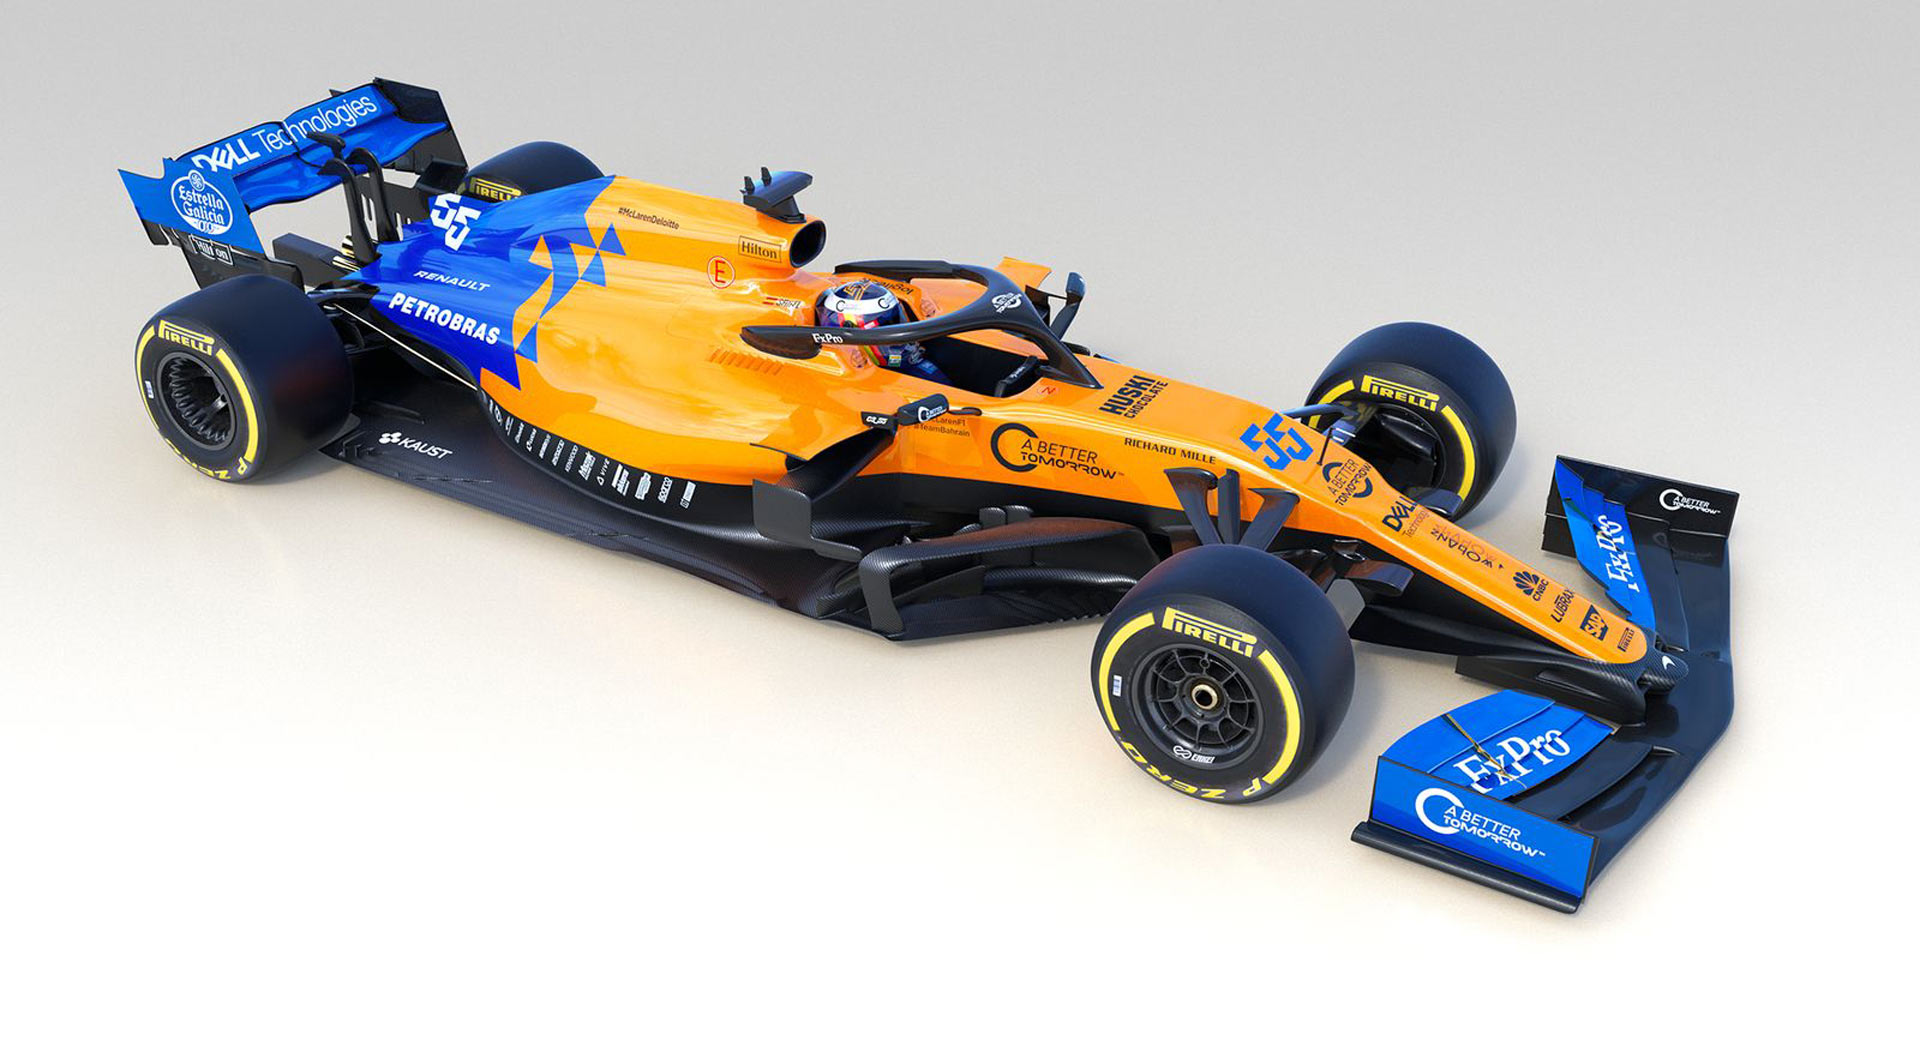 McLaren F1 Presents 2019 MCL34 Car, AllNew Driver Lineup Carscoops